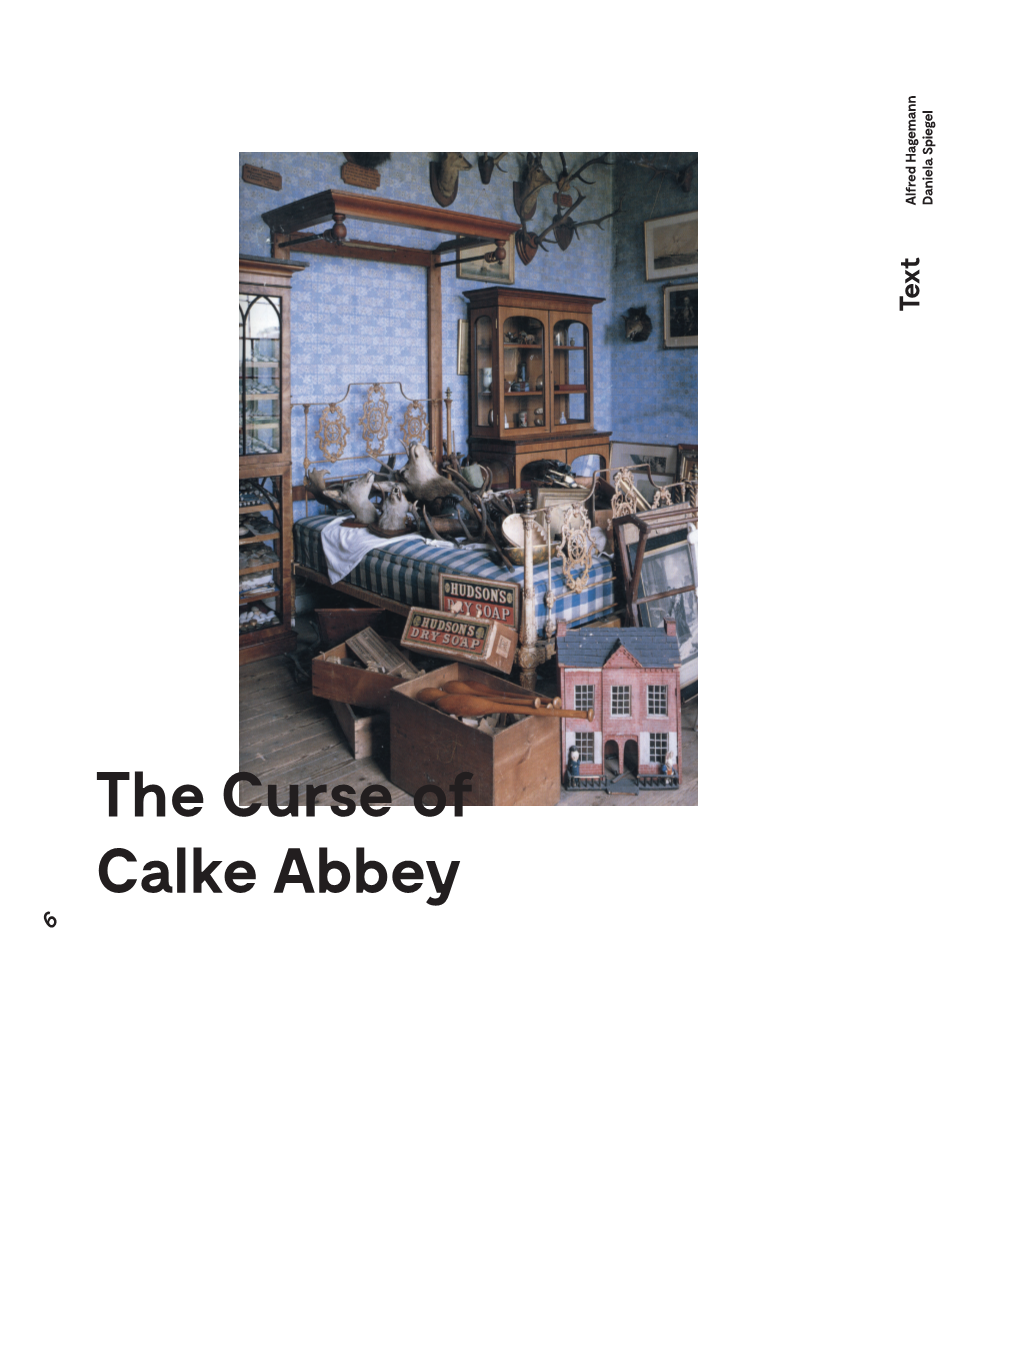 The Curse of Calke Abbey